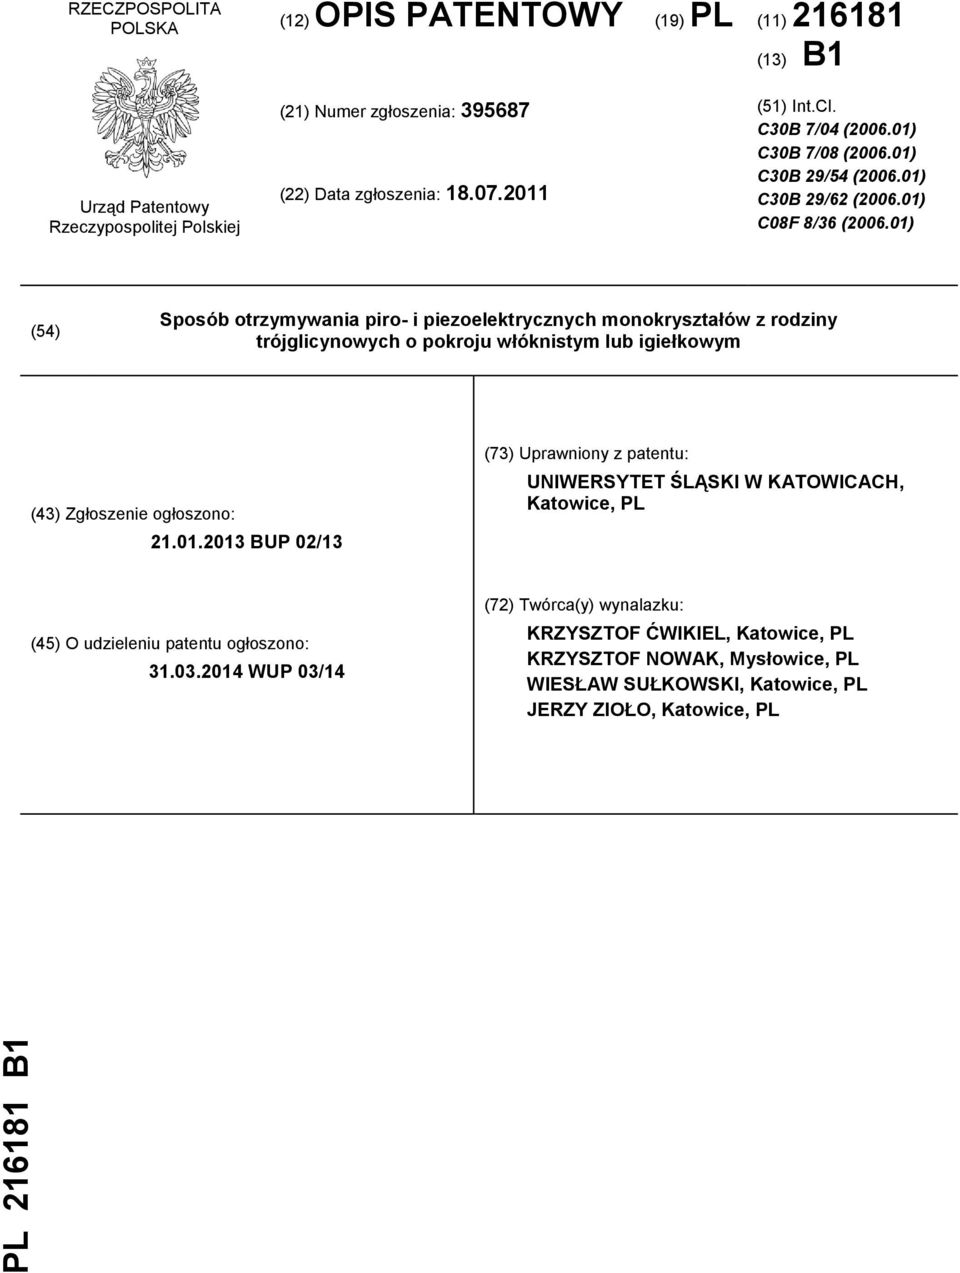 01) (54) Sposób otrzymywania piro- i piezoelektrycznych monokryształów z rodziny trójglicynowych o pokroju włóknistym lub igiełkowym (43) Zgłoszenie ogłoszono: 21.01.2013 BUP 02/13 (73) Uprawniony z patentu: UNIWERSYTET ŚLĄSKI W KATOWICACH, Katowice, PL (45) O udzieleniu patentu ogłoszono: 31.